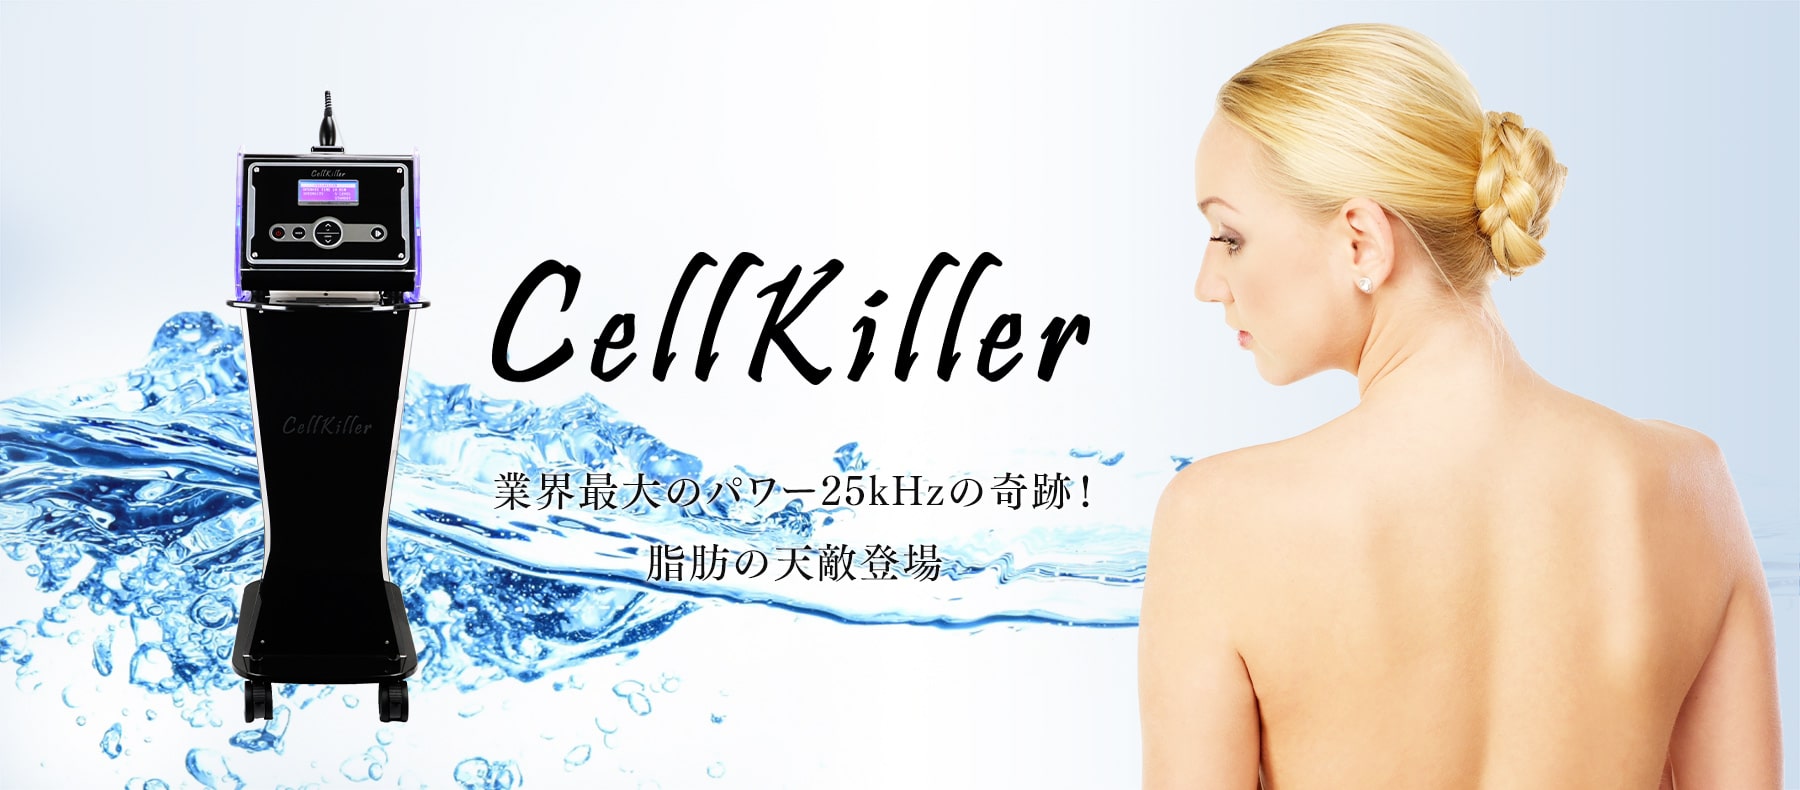 Cellkiller